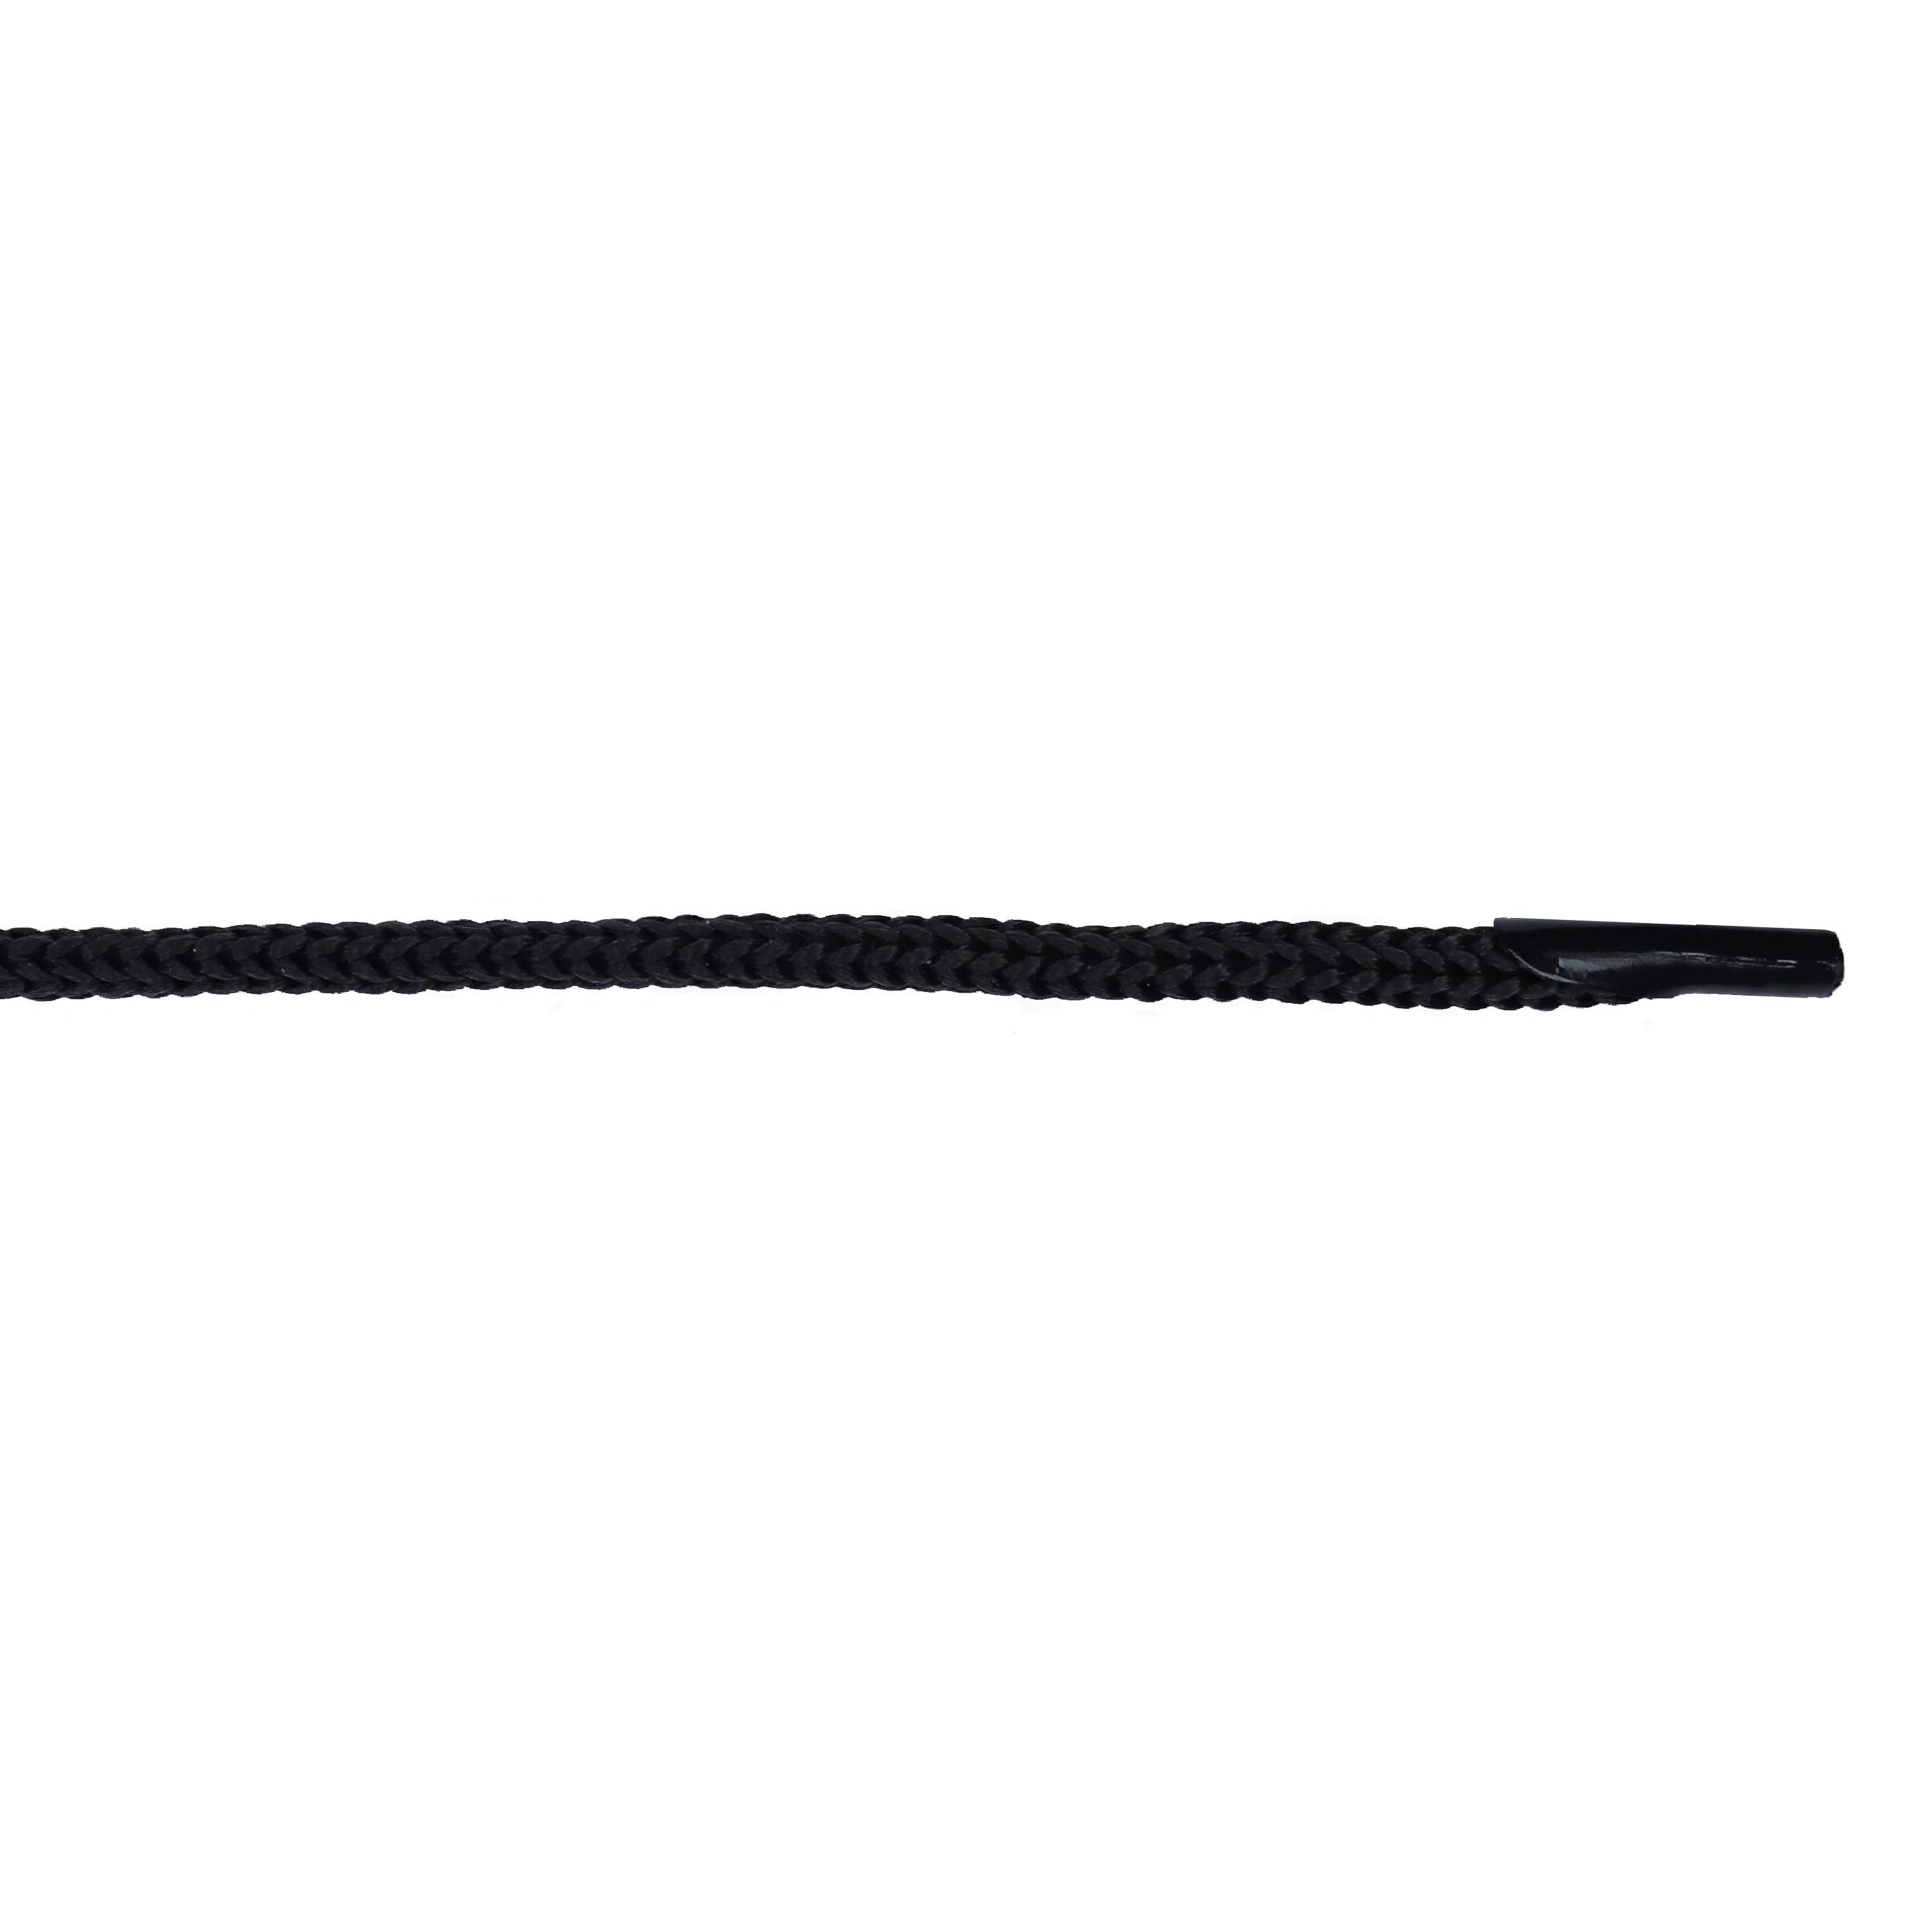 Шнурок для пакетов с крючком арт. 5В511 п/п, диам. 5 мм, дл. 35 см, № 365 ДС черный (уп. 50 пар)